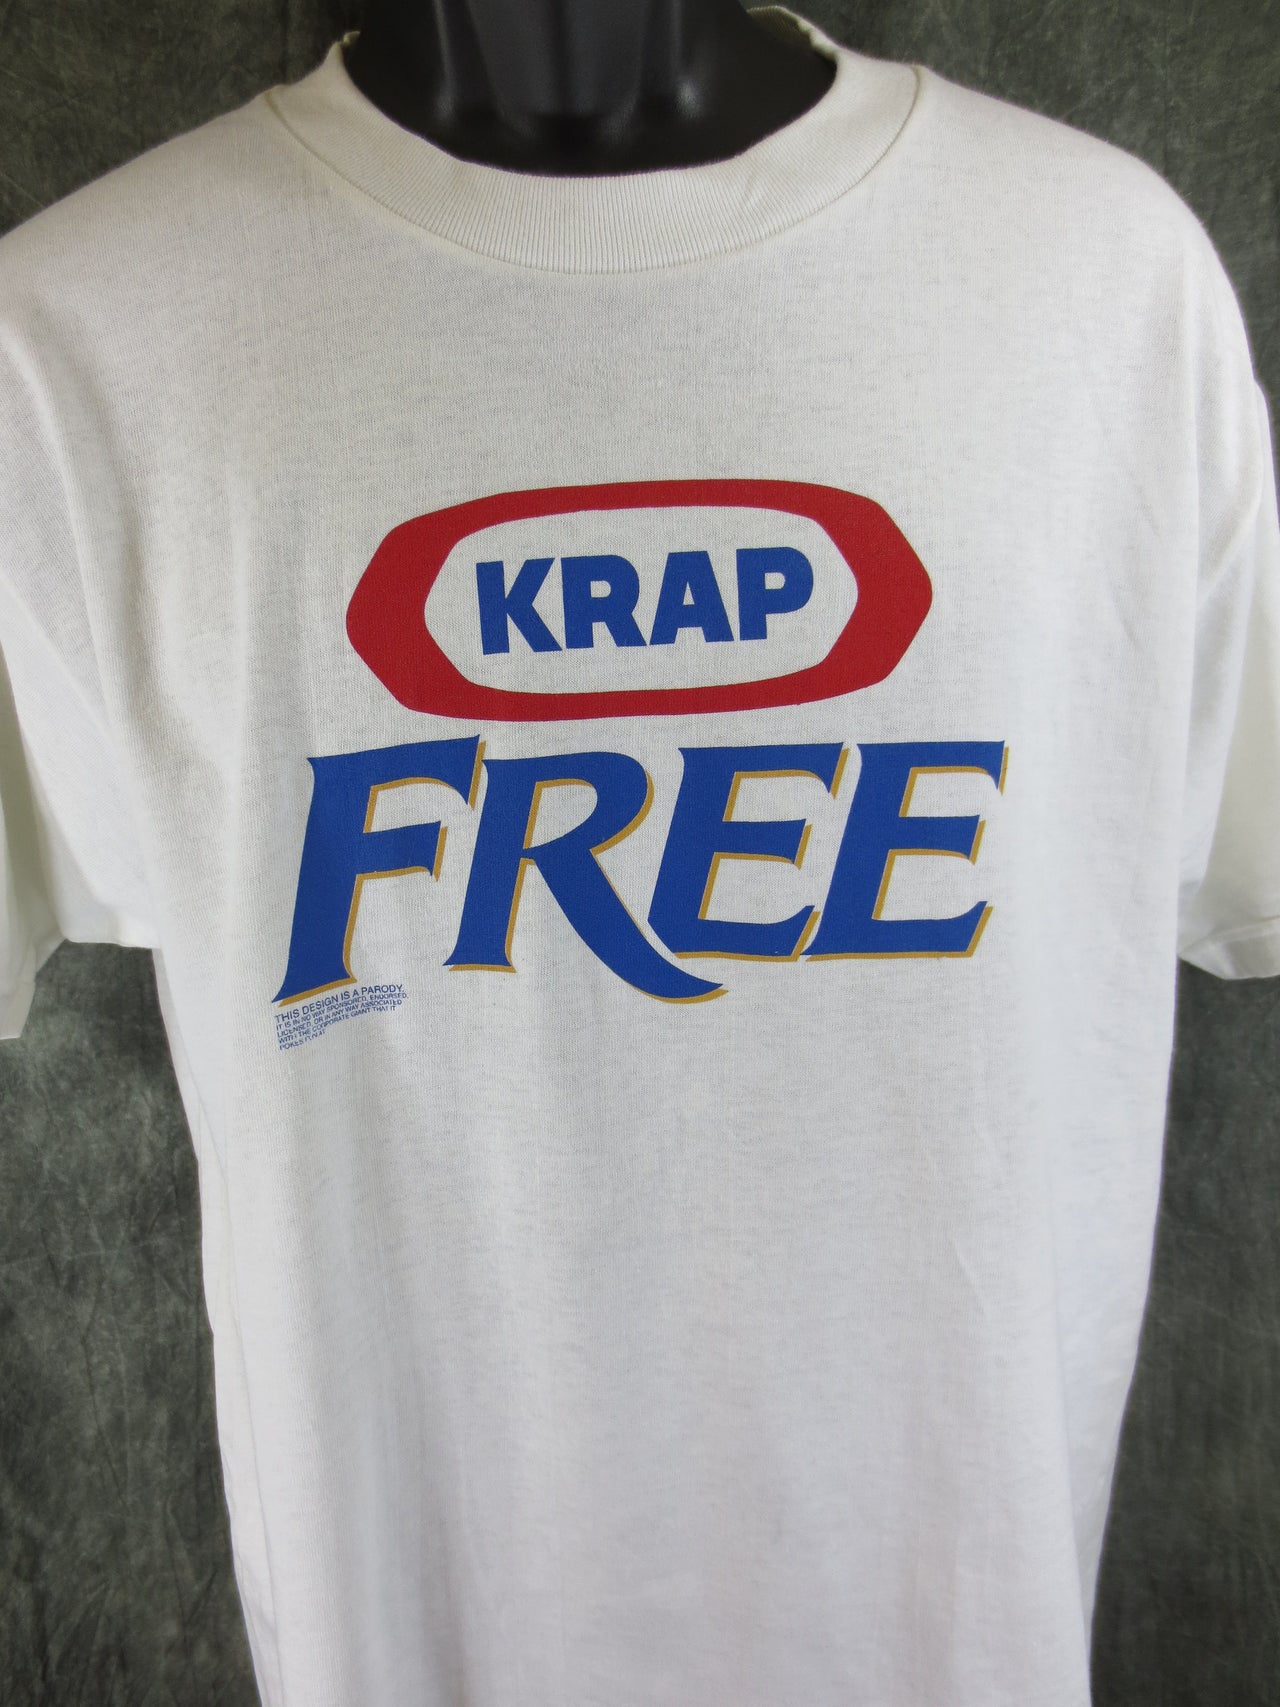 Krap Free Adult White Size L Large Tshirt - TshirtNow.net - 4